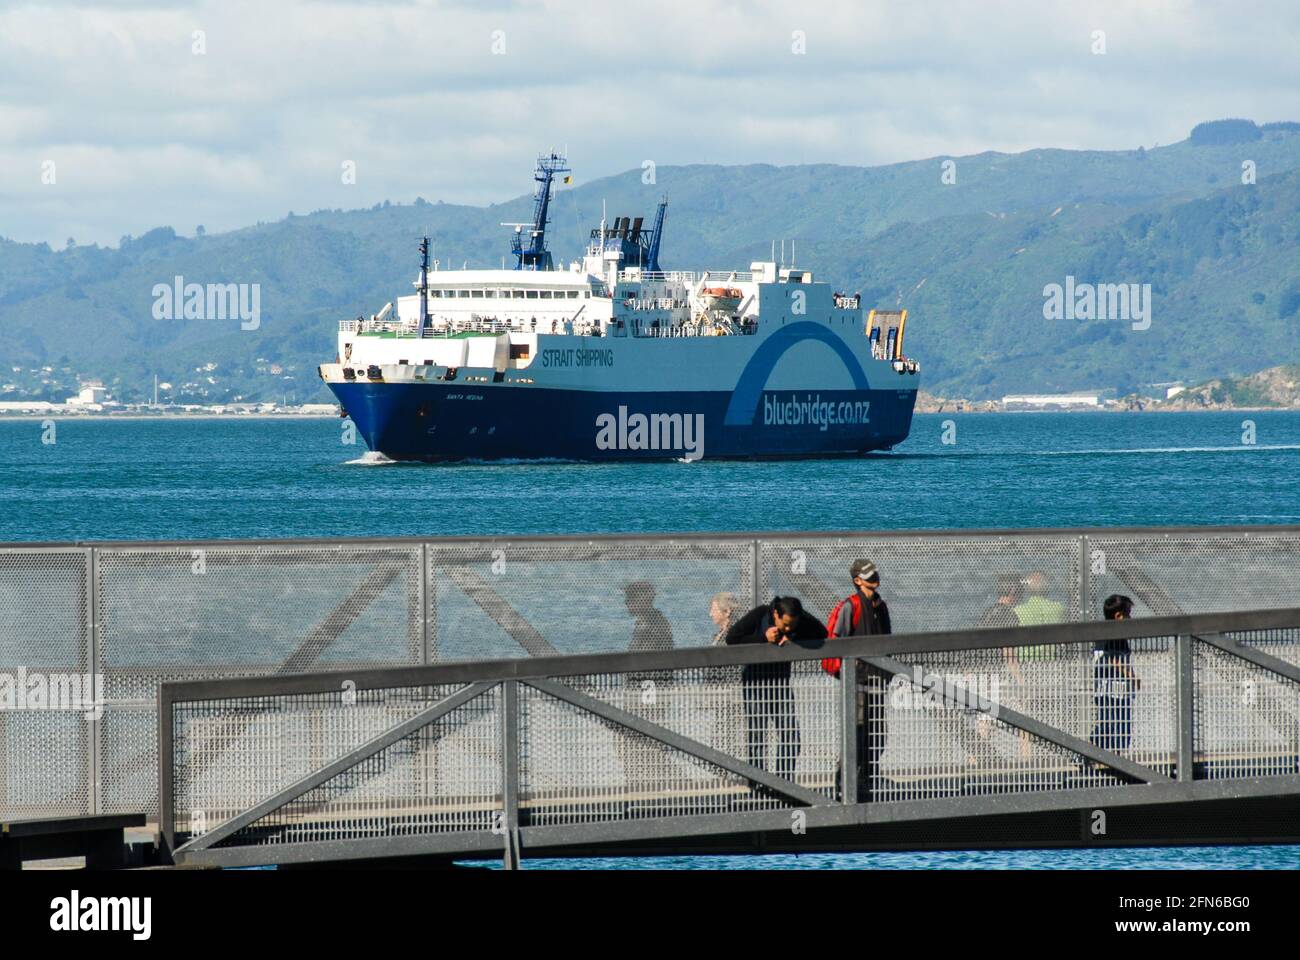 Lifeline von Neuseeland: Eine Bluebridge-Fähre, die von der Cook Strait aus in die Bucht von Wellington fährt. Die Fähren verbinden Nord- und Südinsel durch regulären Verkehr. Stockfoto